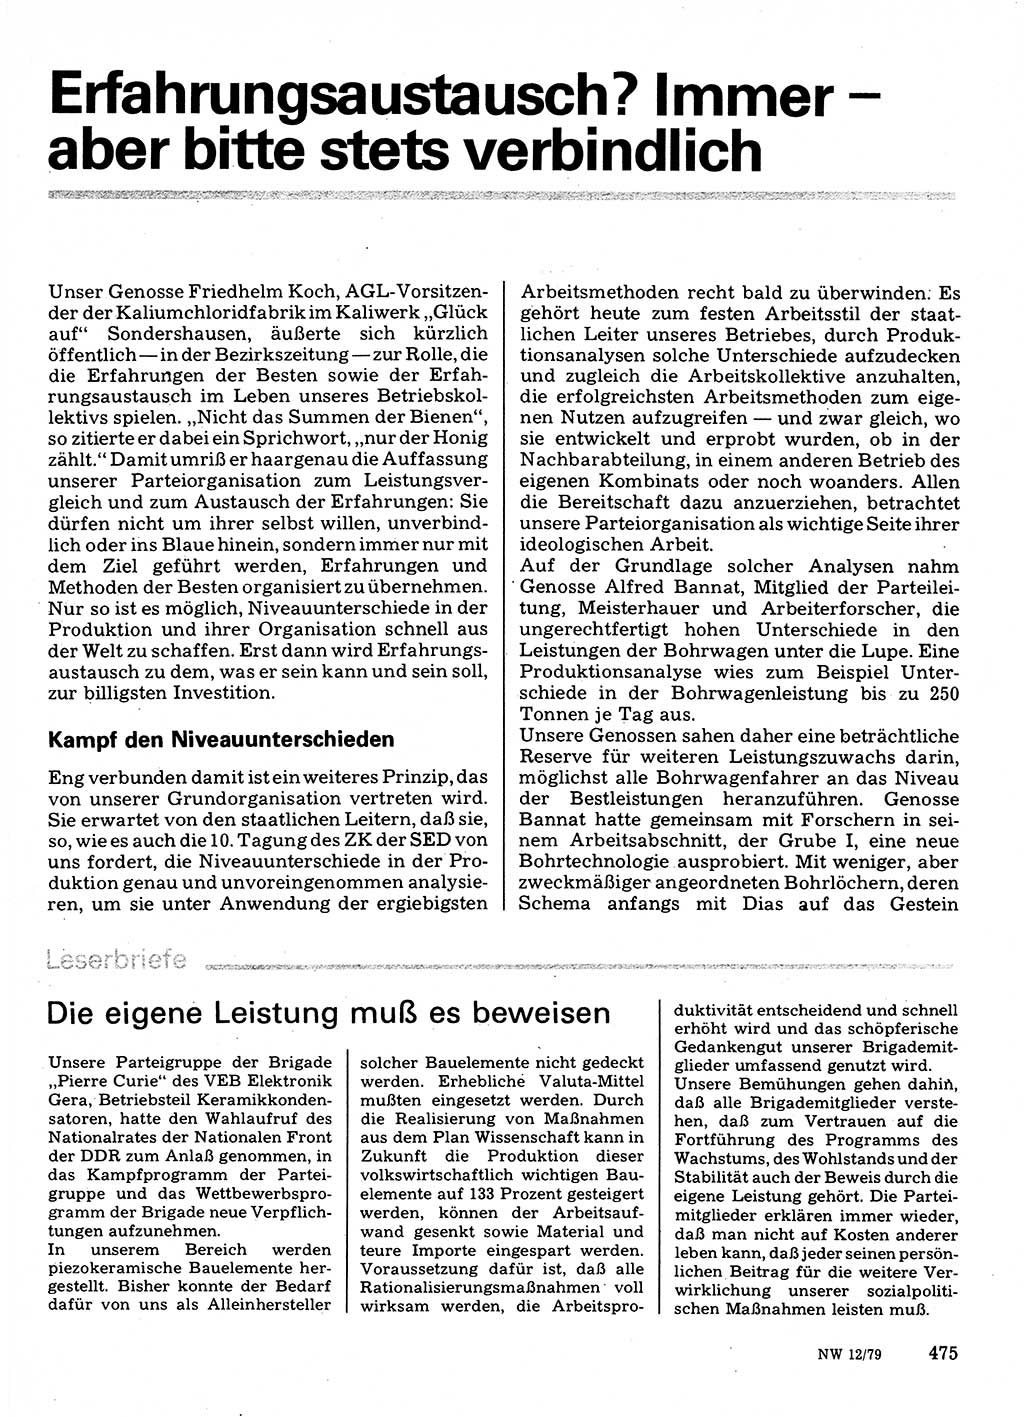 Neuer Weg (NW), Organ des Zentralkomitees (ZK) der SED (Sozialistische Einheitspartei Deutschlands) für Fragen des Parteilebens, 34. Jahrgang [Deutsche Demokratische Republik (DDR)] 1979, Seite 475 (NW ZK SED DDR 1979, S. 475)